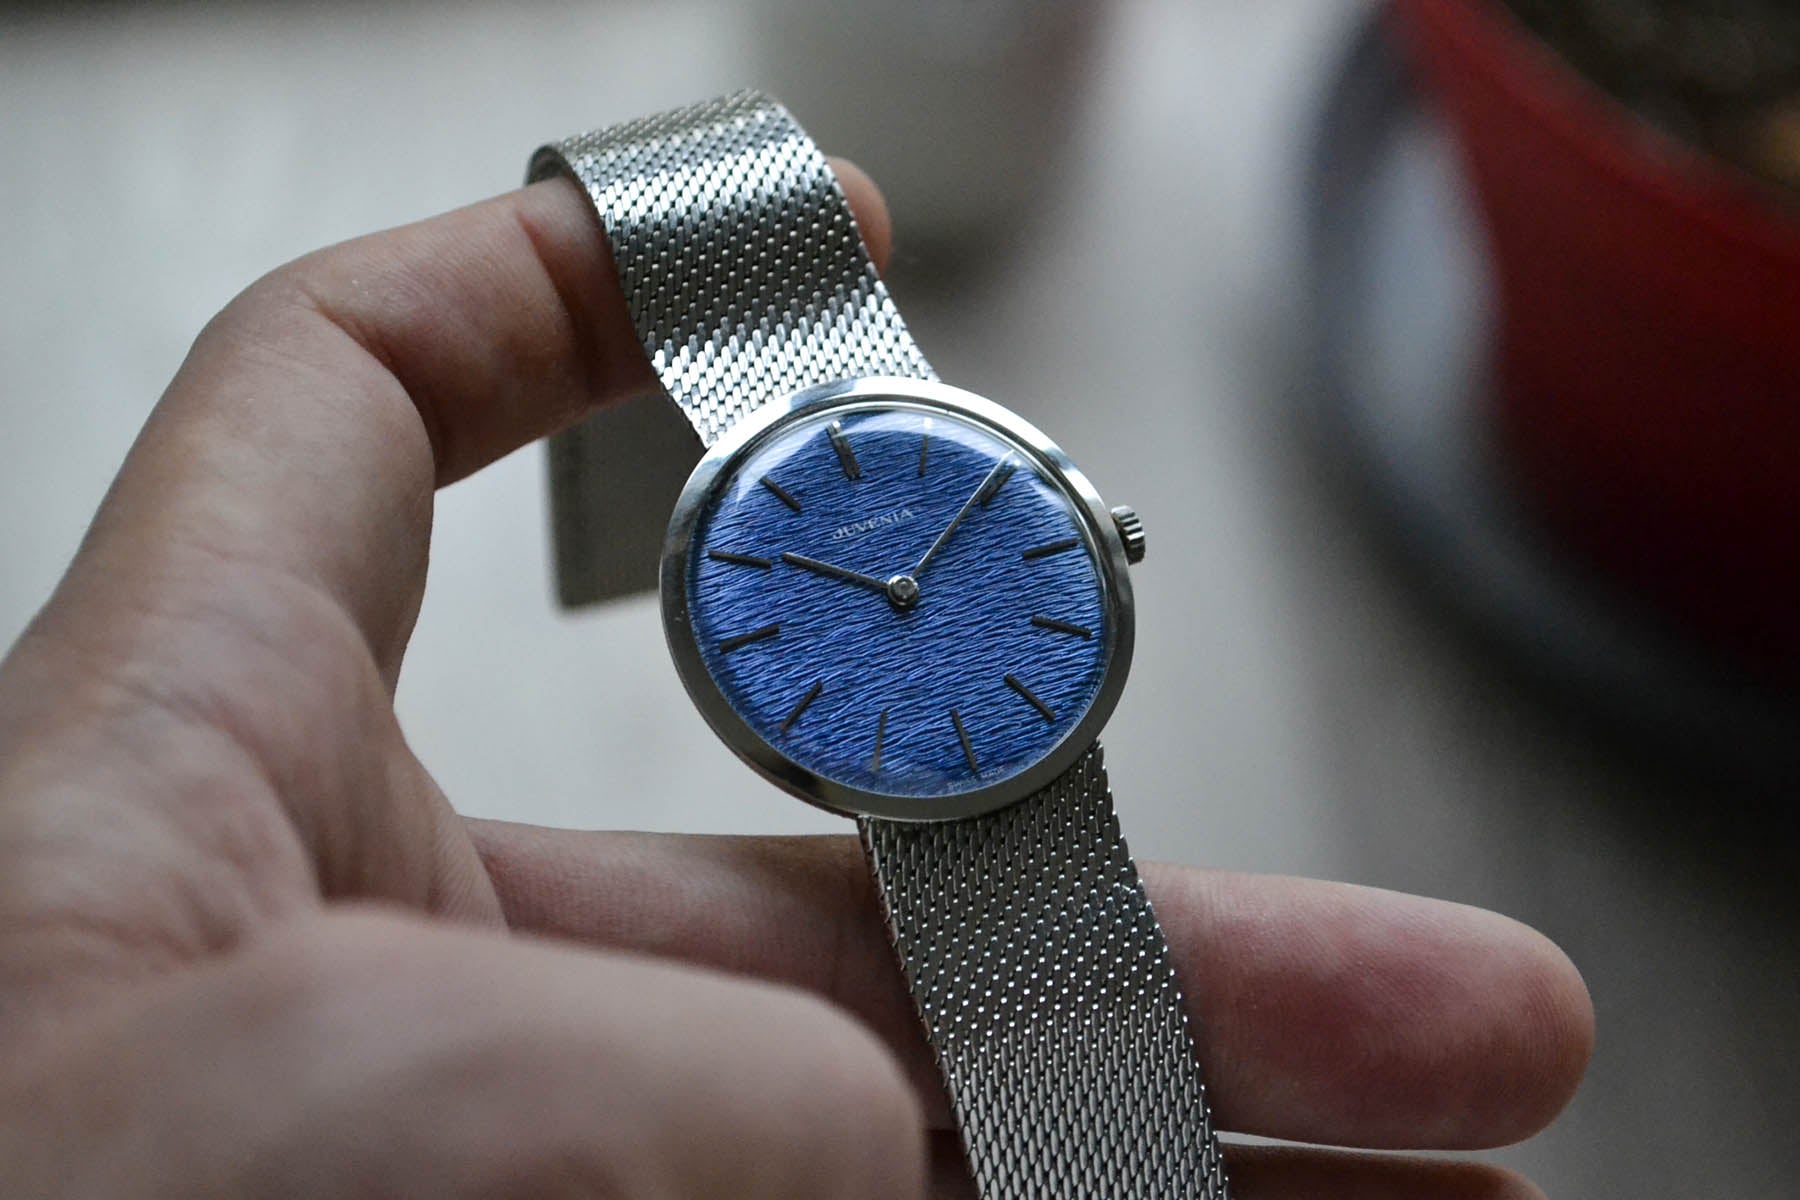 Juvenia Slim "Vagues Bleues" 7001 lumeville montre vintage